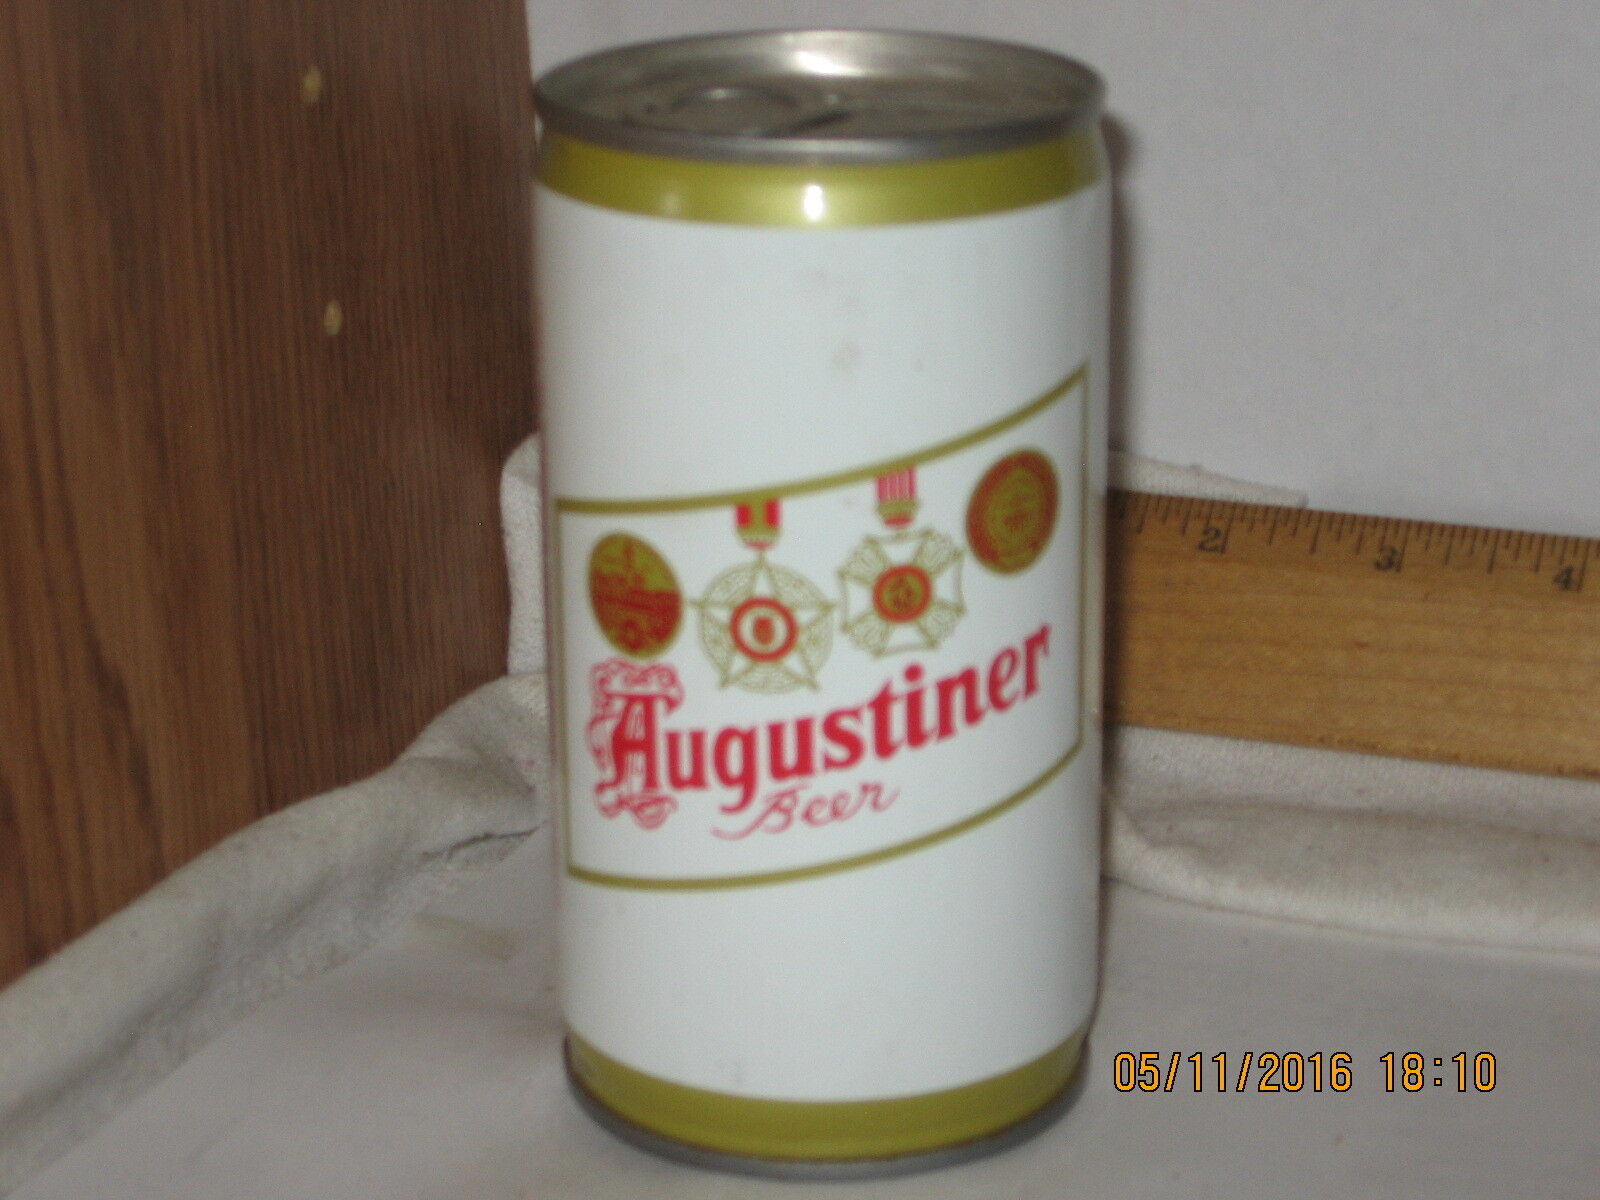 Augustiner Beer, Pittsburgh PA 12 oz crimped steel beer can pull tab bttm opnd